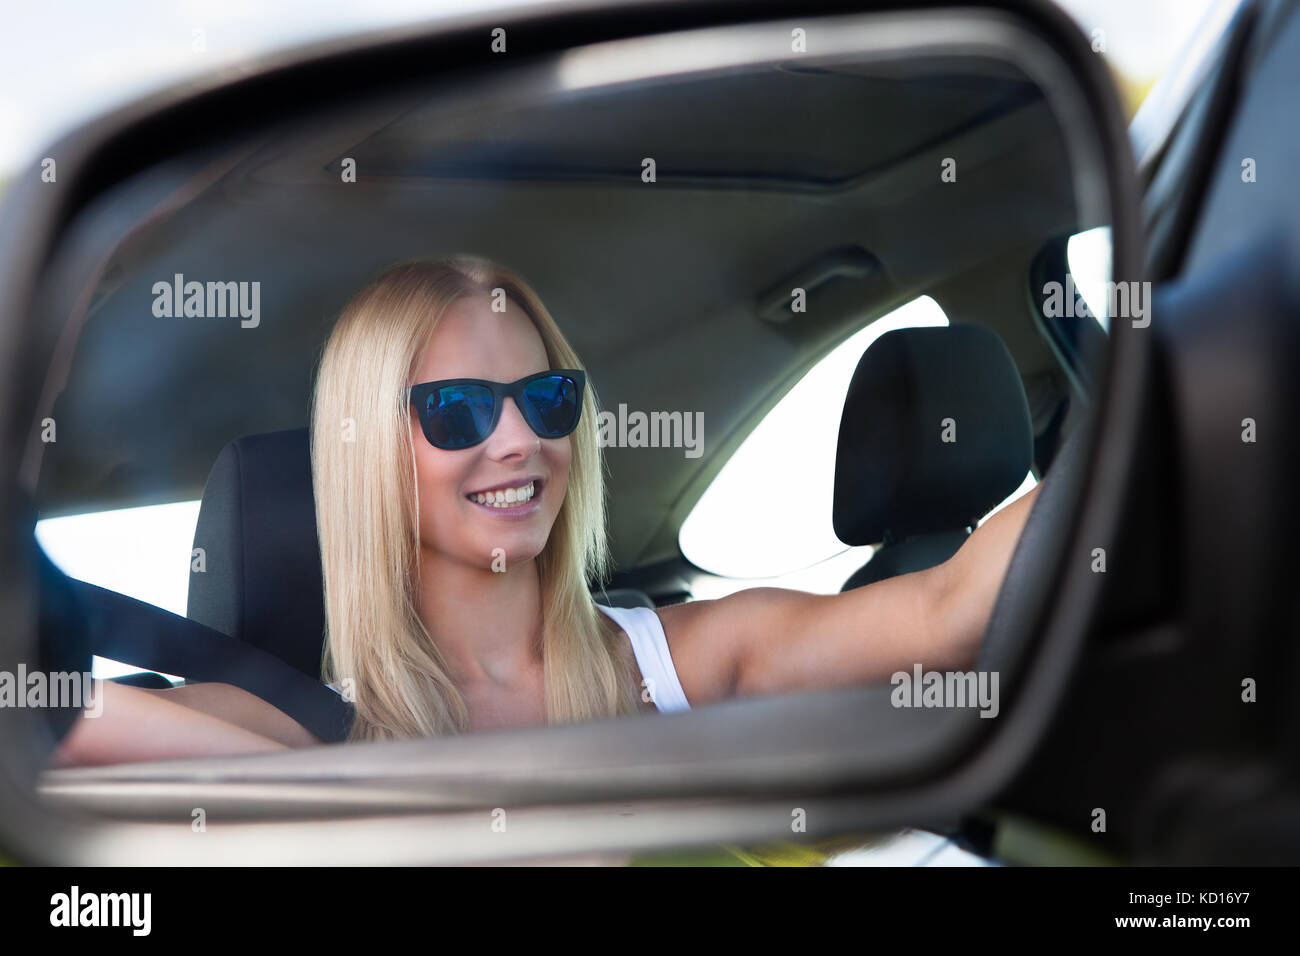 Mit Sonnenbrille Auto fahren